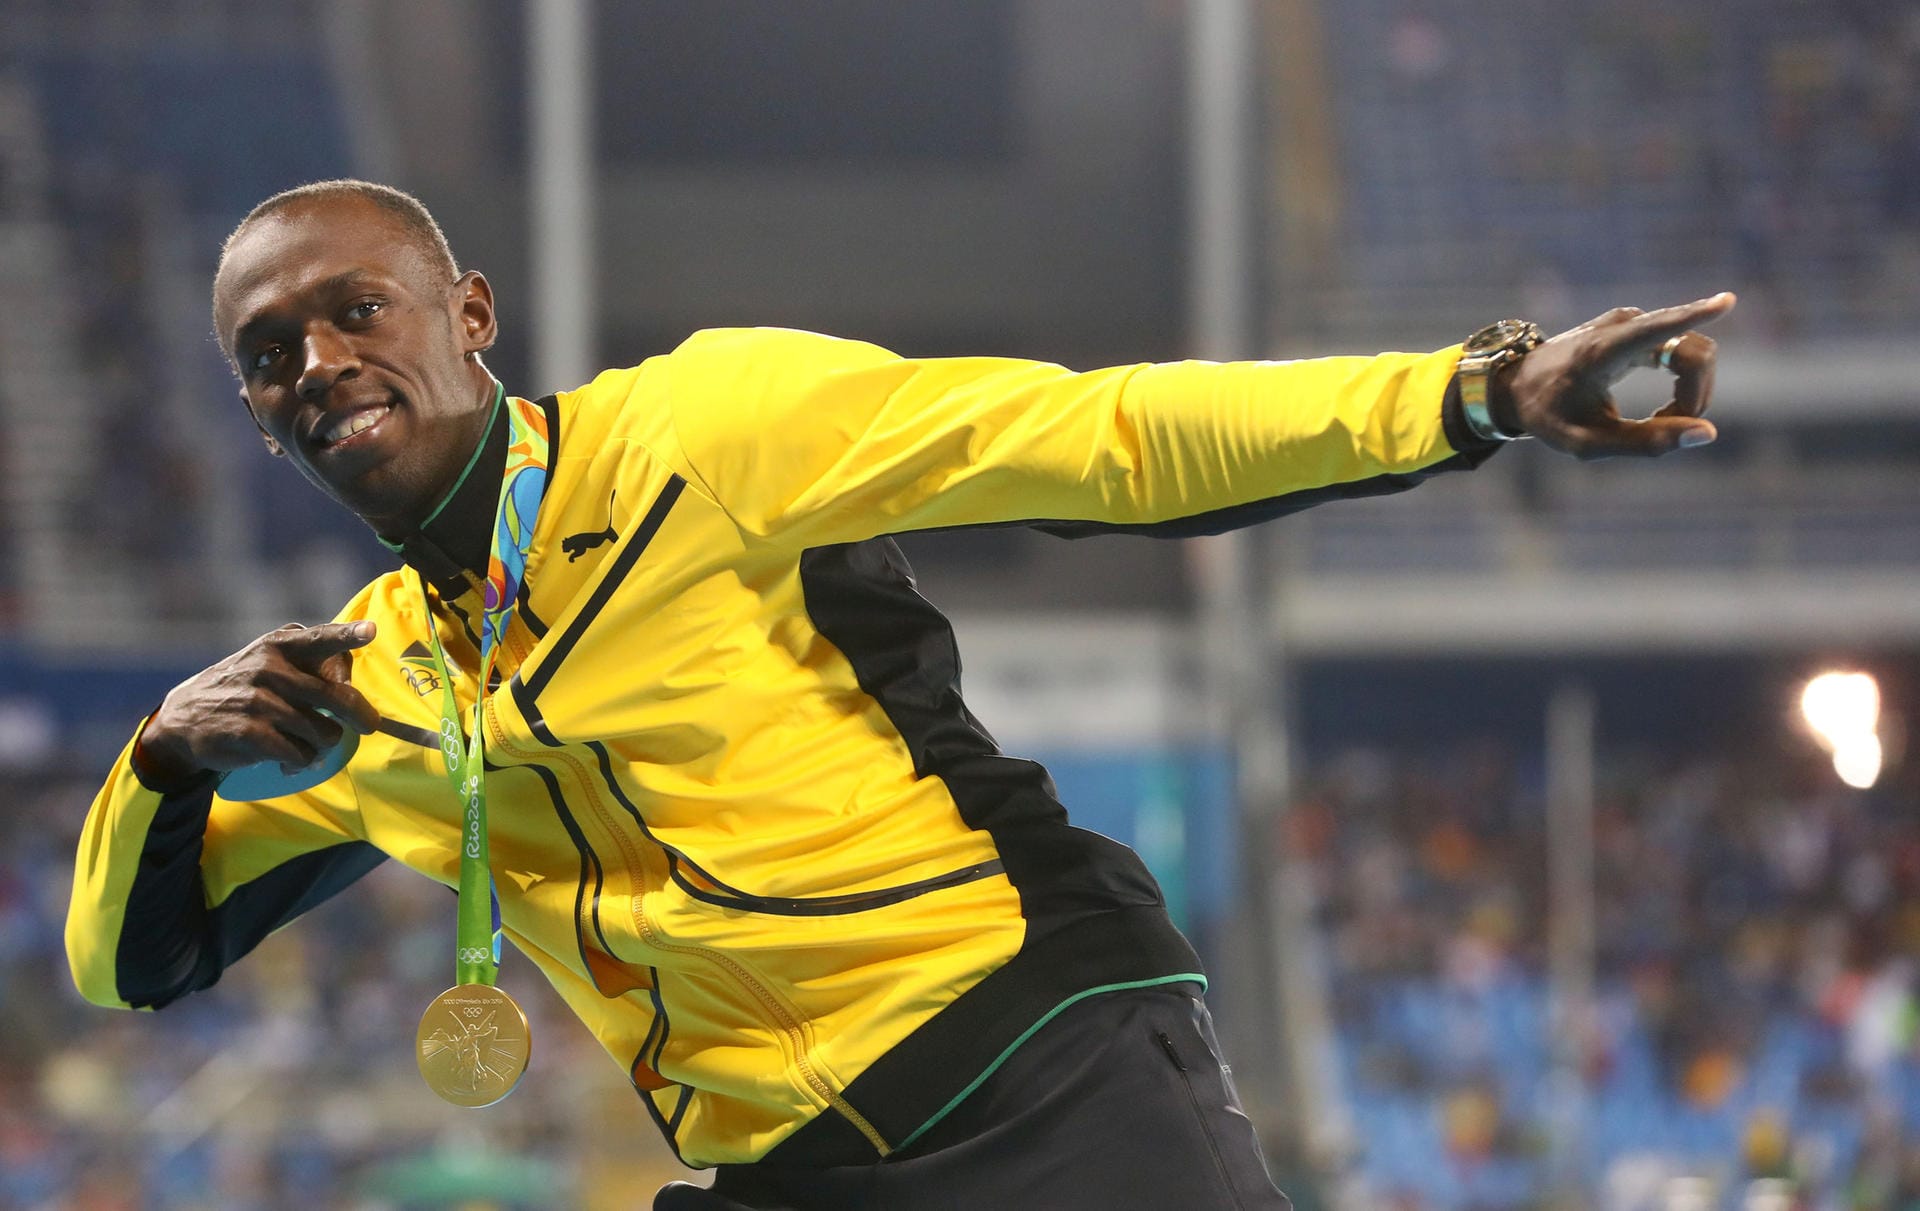 Nach seinem überlegenen Sieg über 100 Meter bekam Superstar Usain Bolt nun auch seine Gold-Medaille überreicht - der obligatorische Jubel des Jamaikaners durfte da natürlich nicht fehlen.